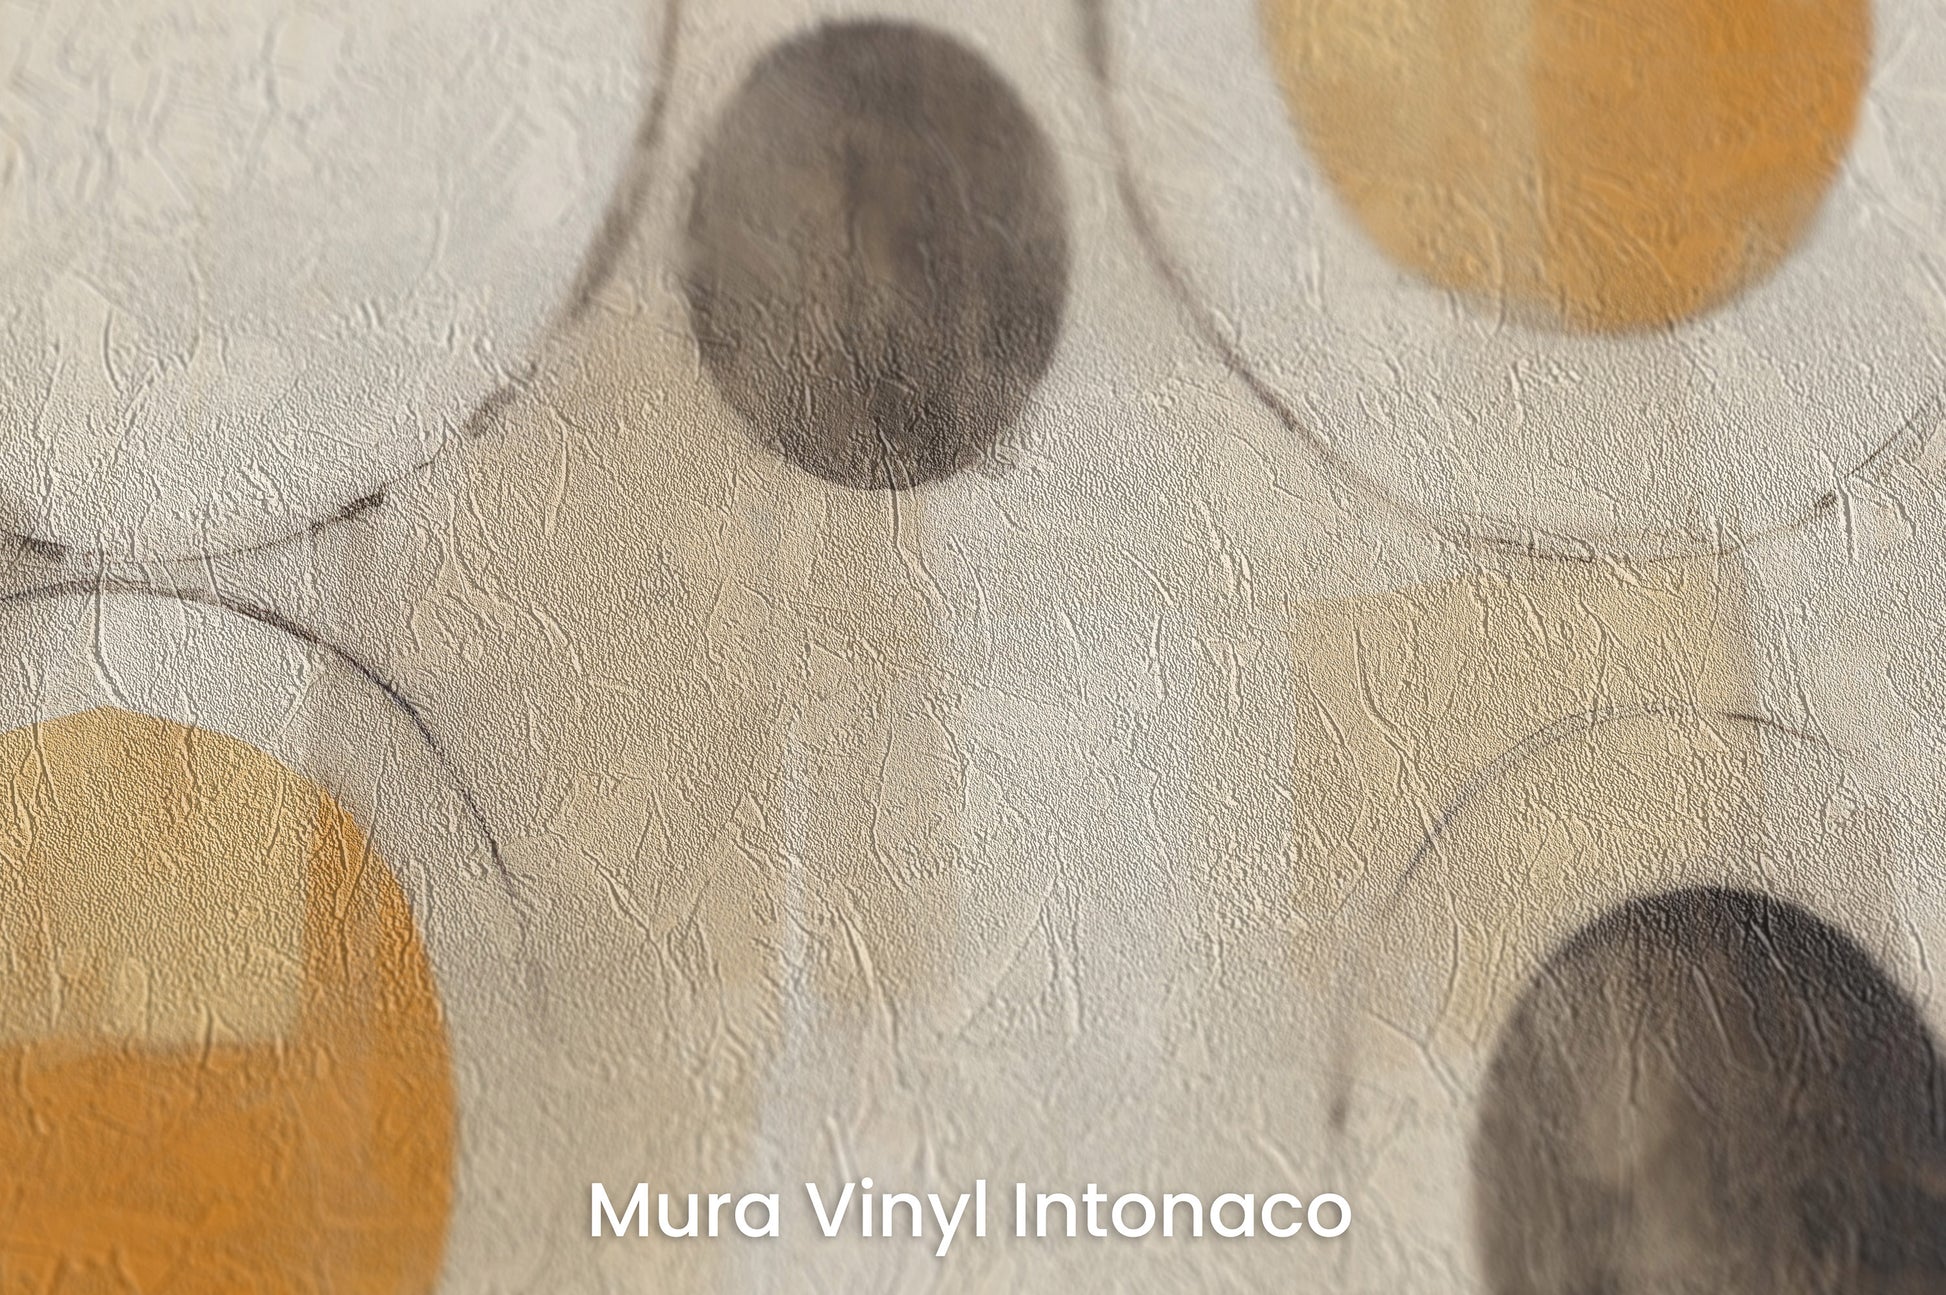 Zbliżenie na artystyczną fototapetę o nazwie SUN-KISSED ORB ARRAY na podłożu Mura Vinyl Intonaco - struktura tartego tynku.